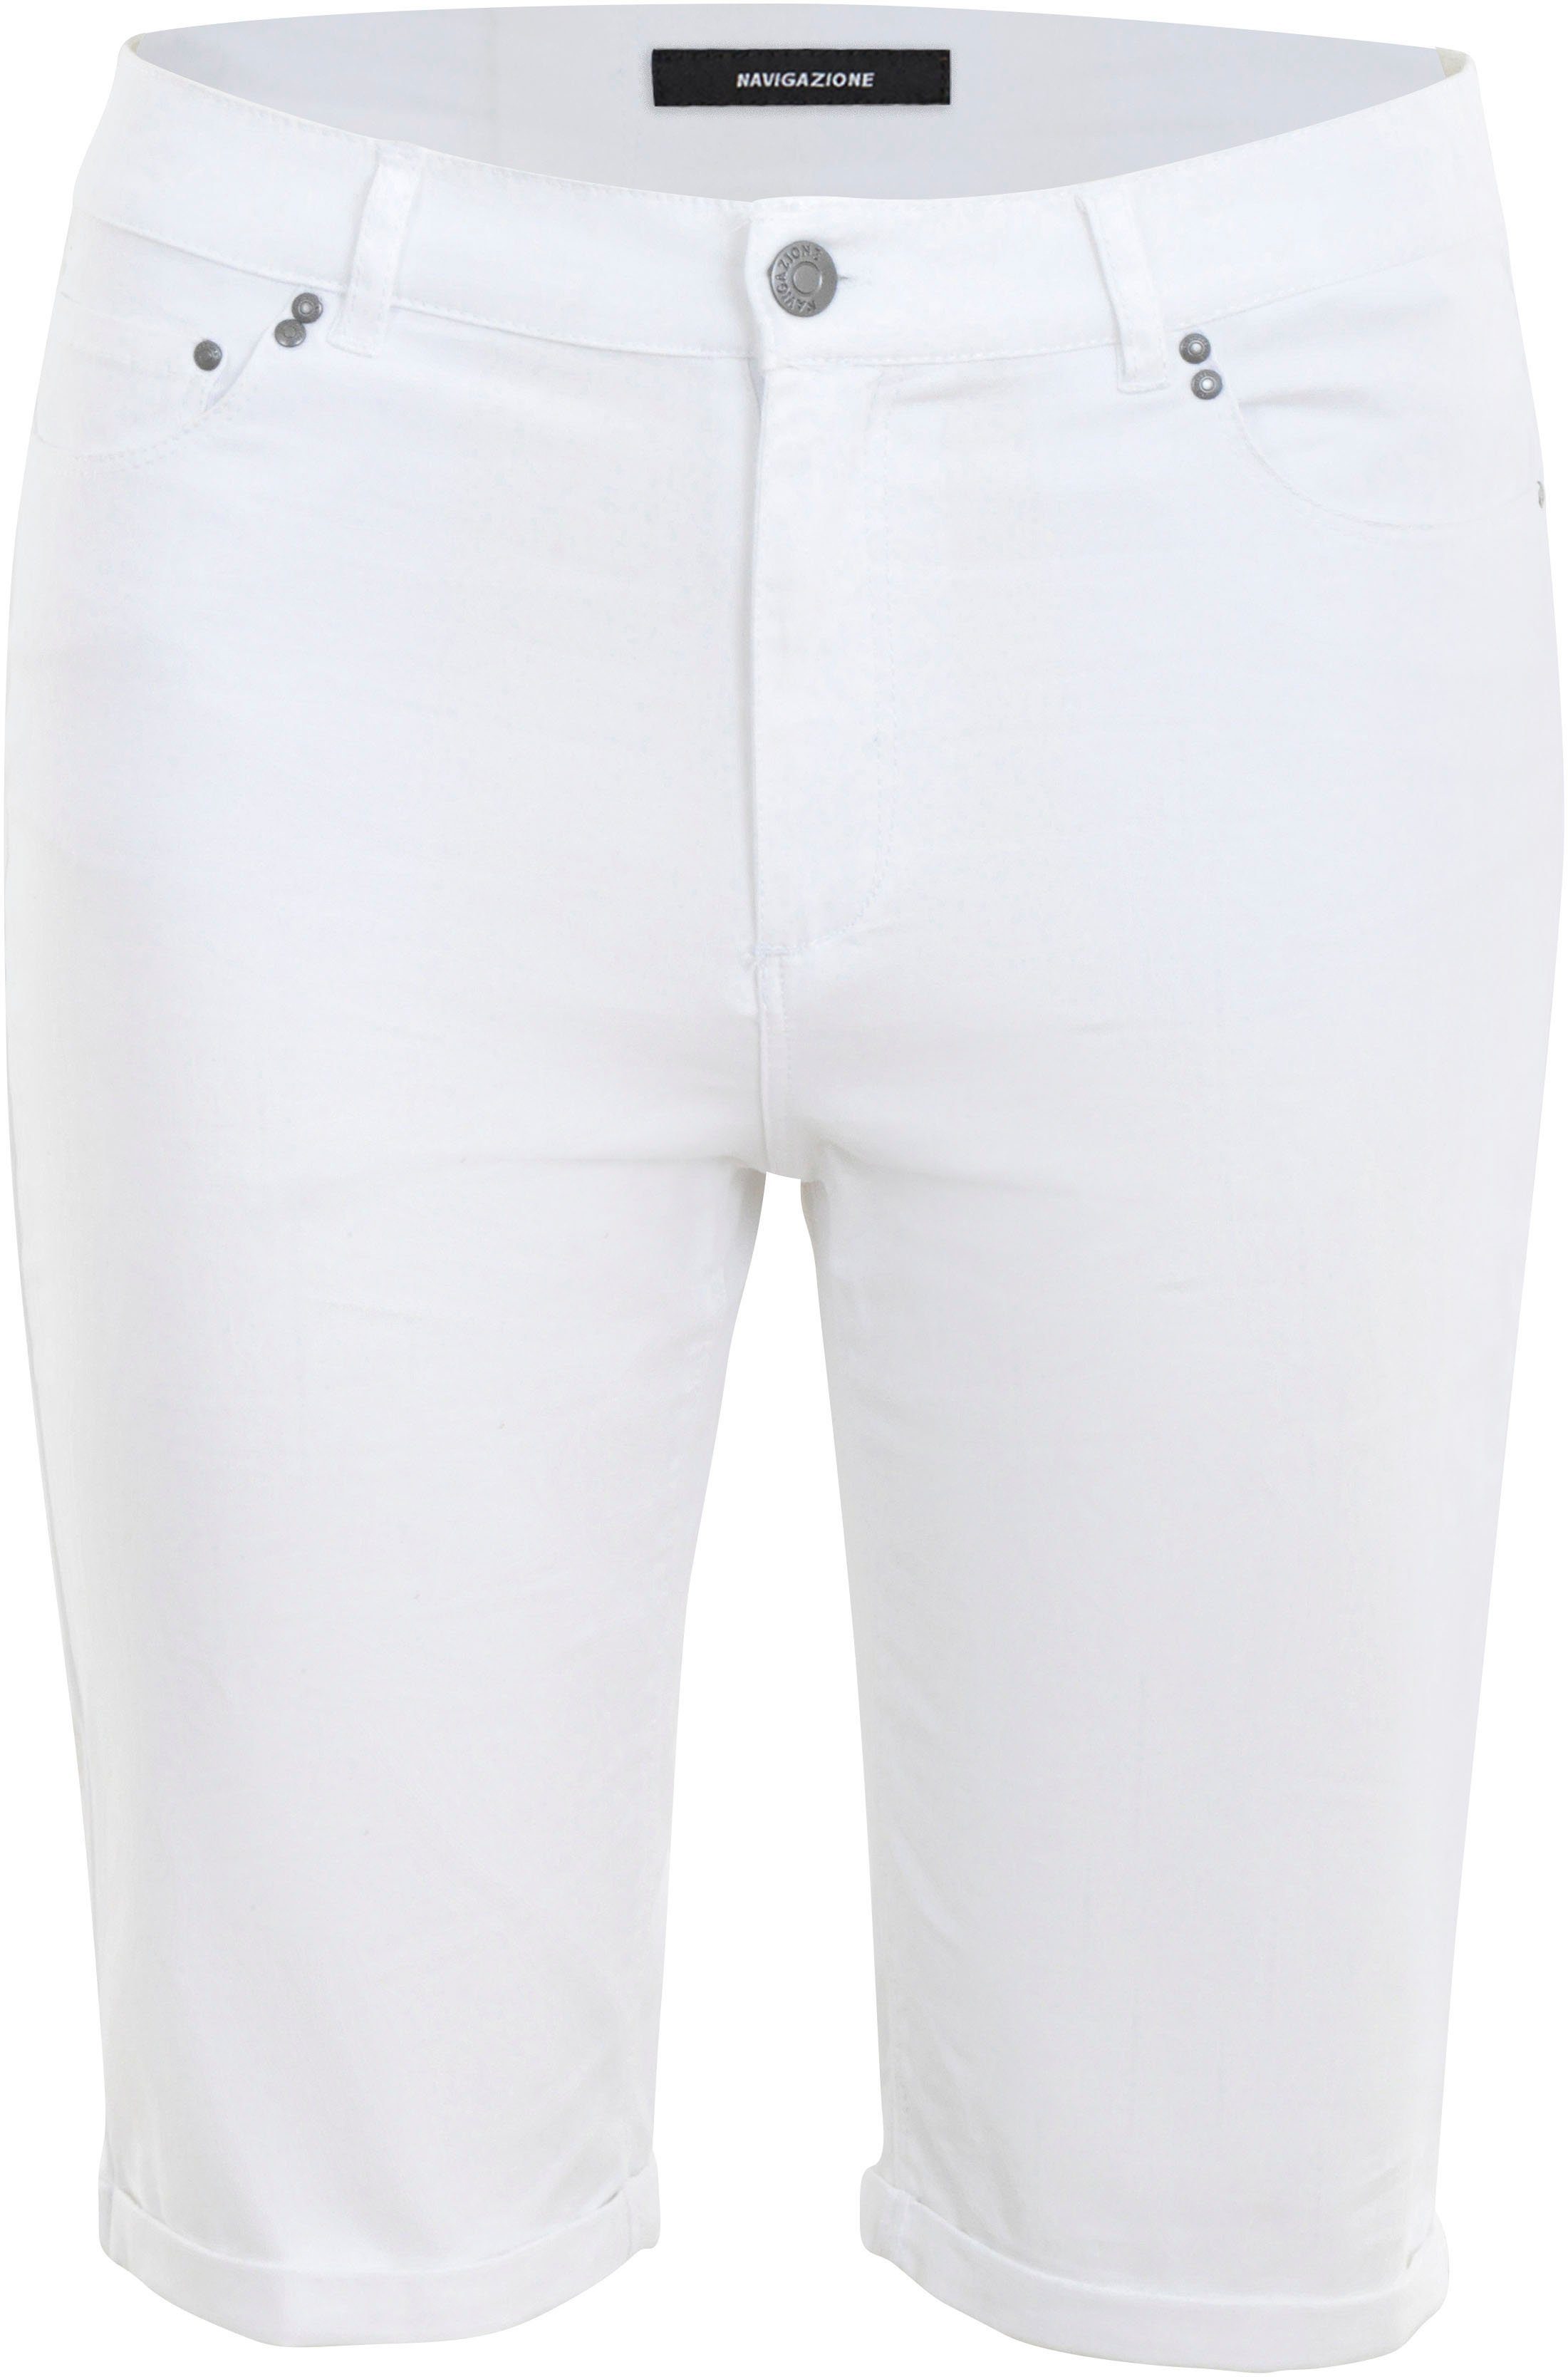 Form 5-Pocket NAVIGAZIONE Shorts in weiß